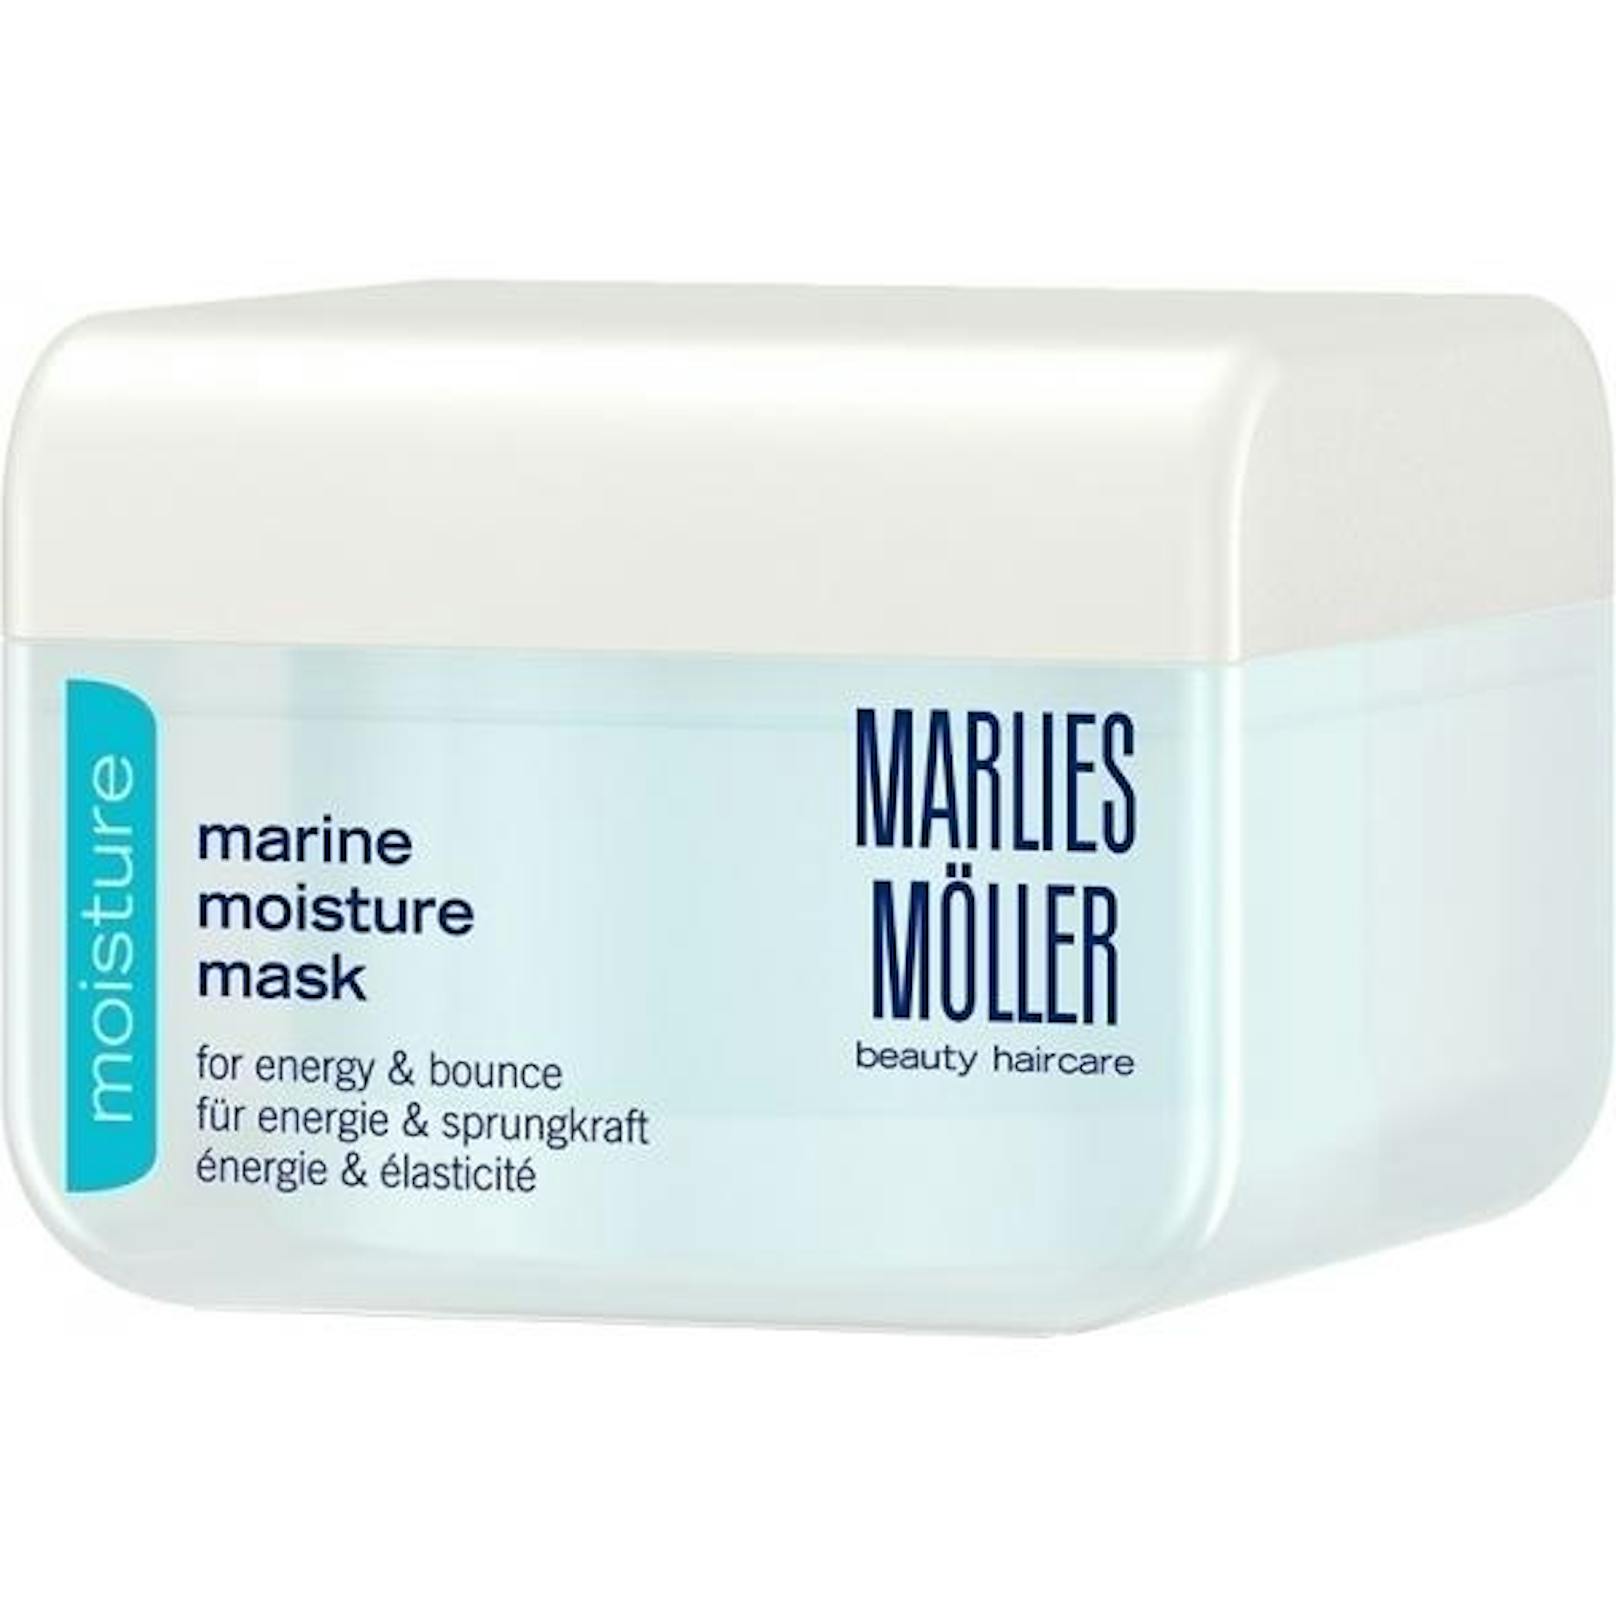 Eine Haarmaske schützt vor Spliss. Die Serie von Marlies Möller wurde mit Perlextrakten und Meeresmineralien angereichert und enthält wertvolle Aminosäuren. (Foto: Marlies Möller)